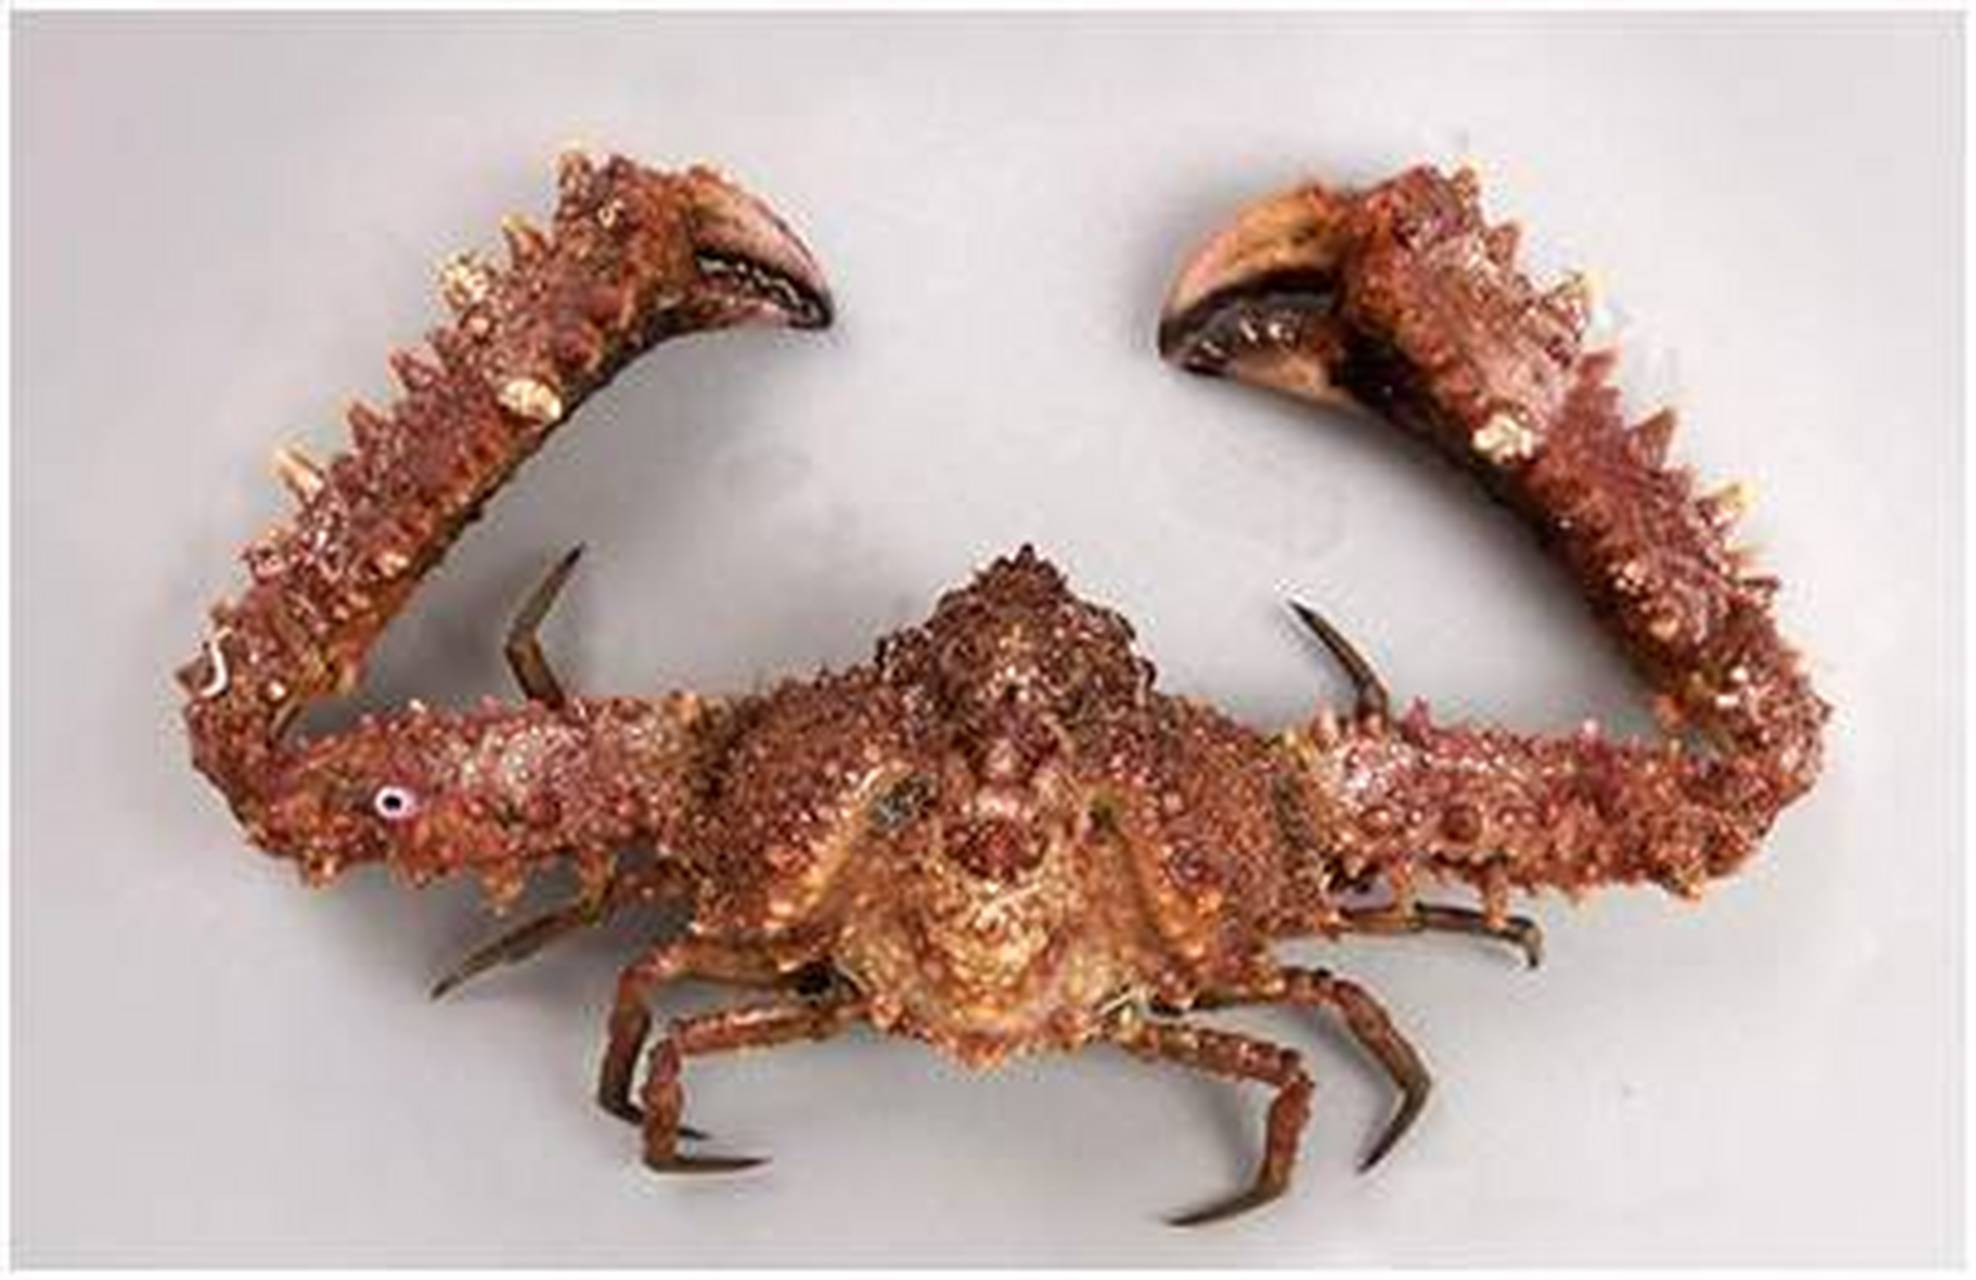 有种蟹叫"强壮紧握蟹,这种螃蟹的蟹壳硬度非常高,肉少味差,所以没有